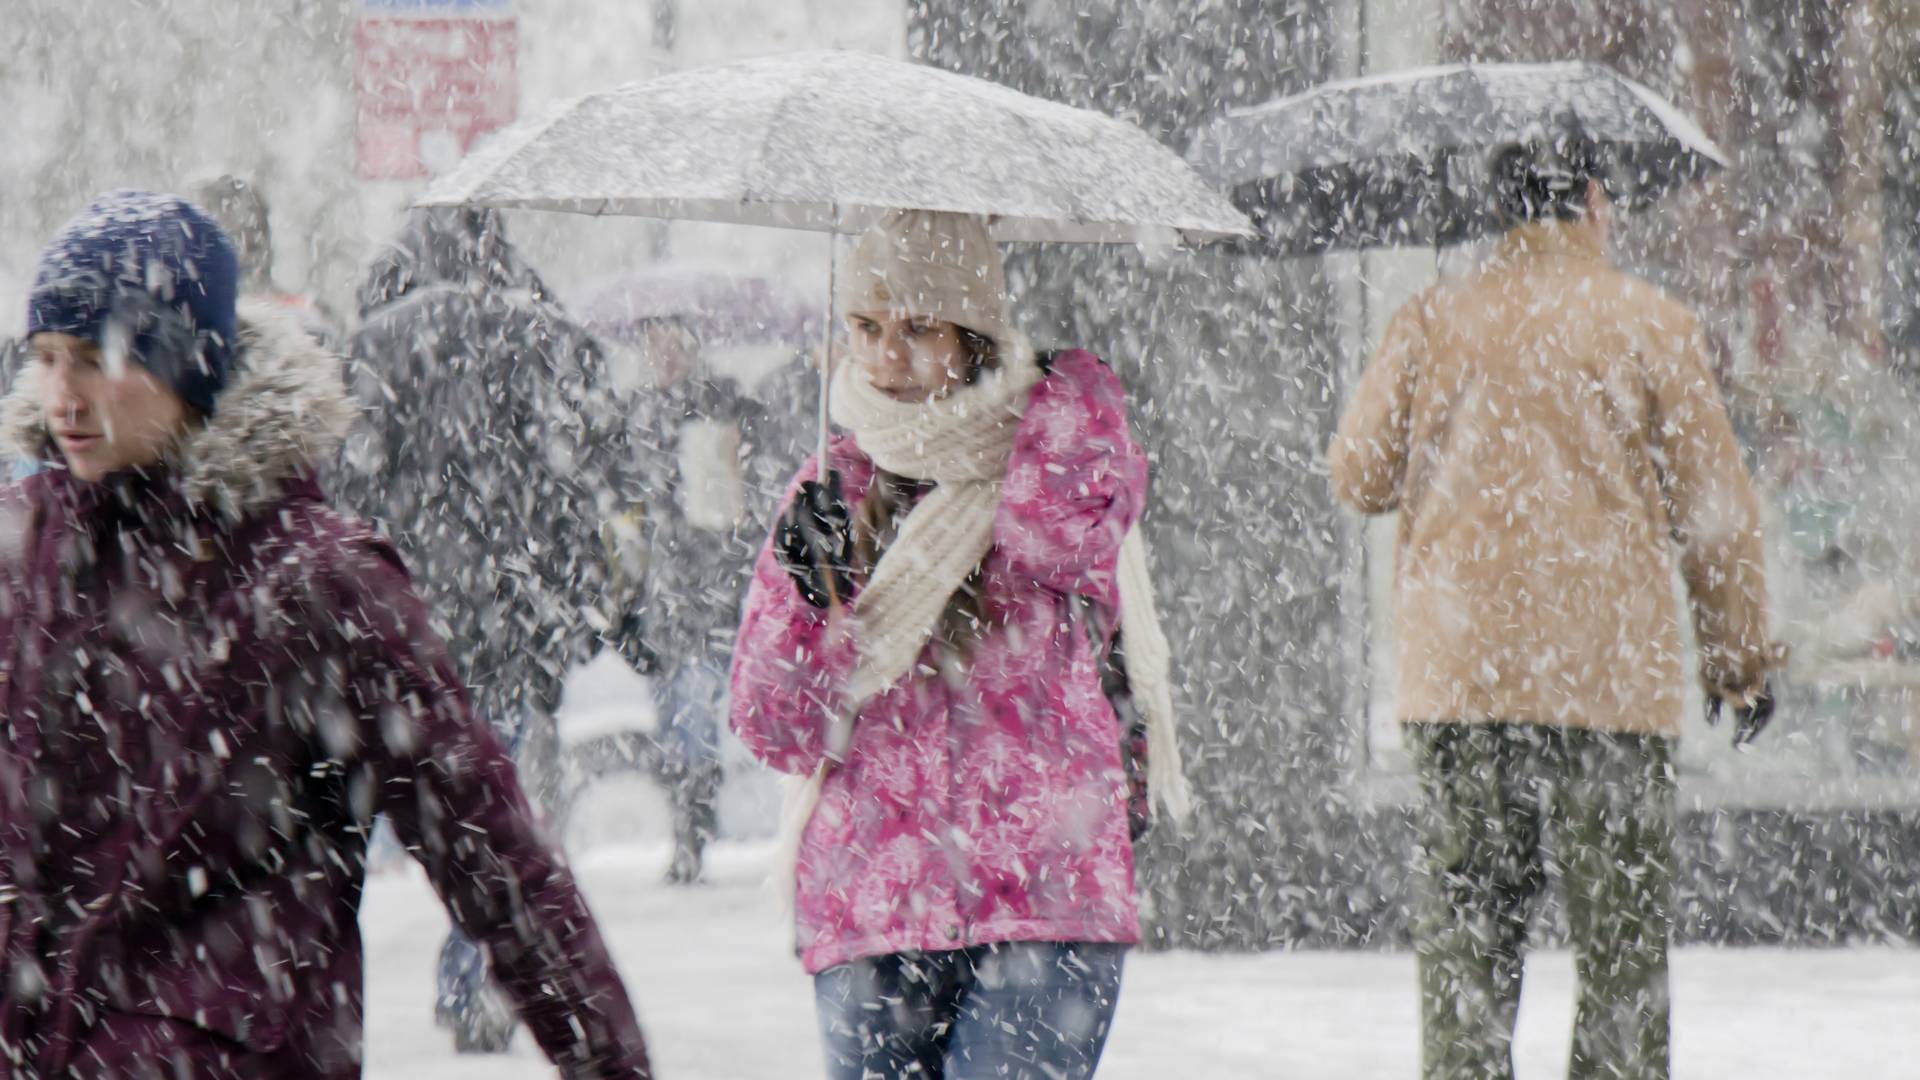 Kiadták a figyelmeztetést: havazás, viharos szél, hófúvás tarolja le az országot